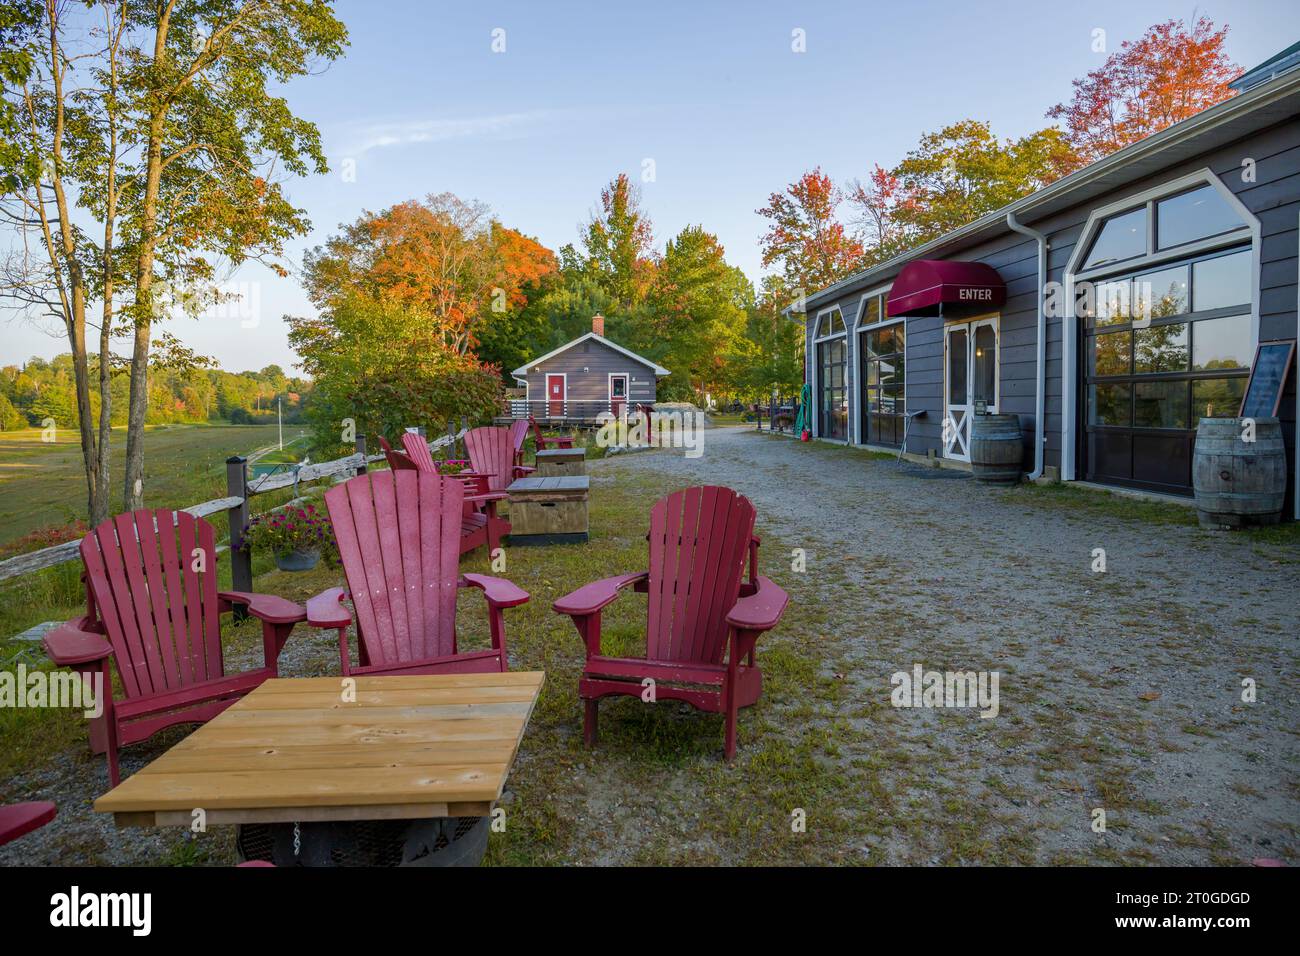 la cour arrière avec vue sur la forêt d'automne - une terrasse vide sans personnes, un patio avec des tables et des chaises muskoka - un espace de détente Banque D'Images